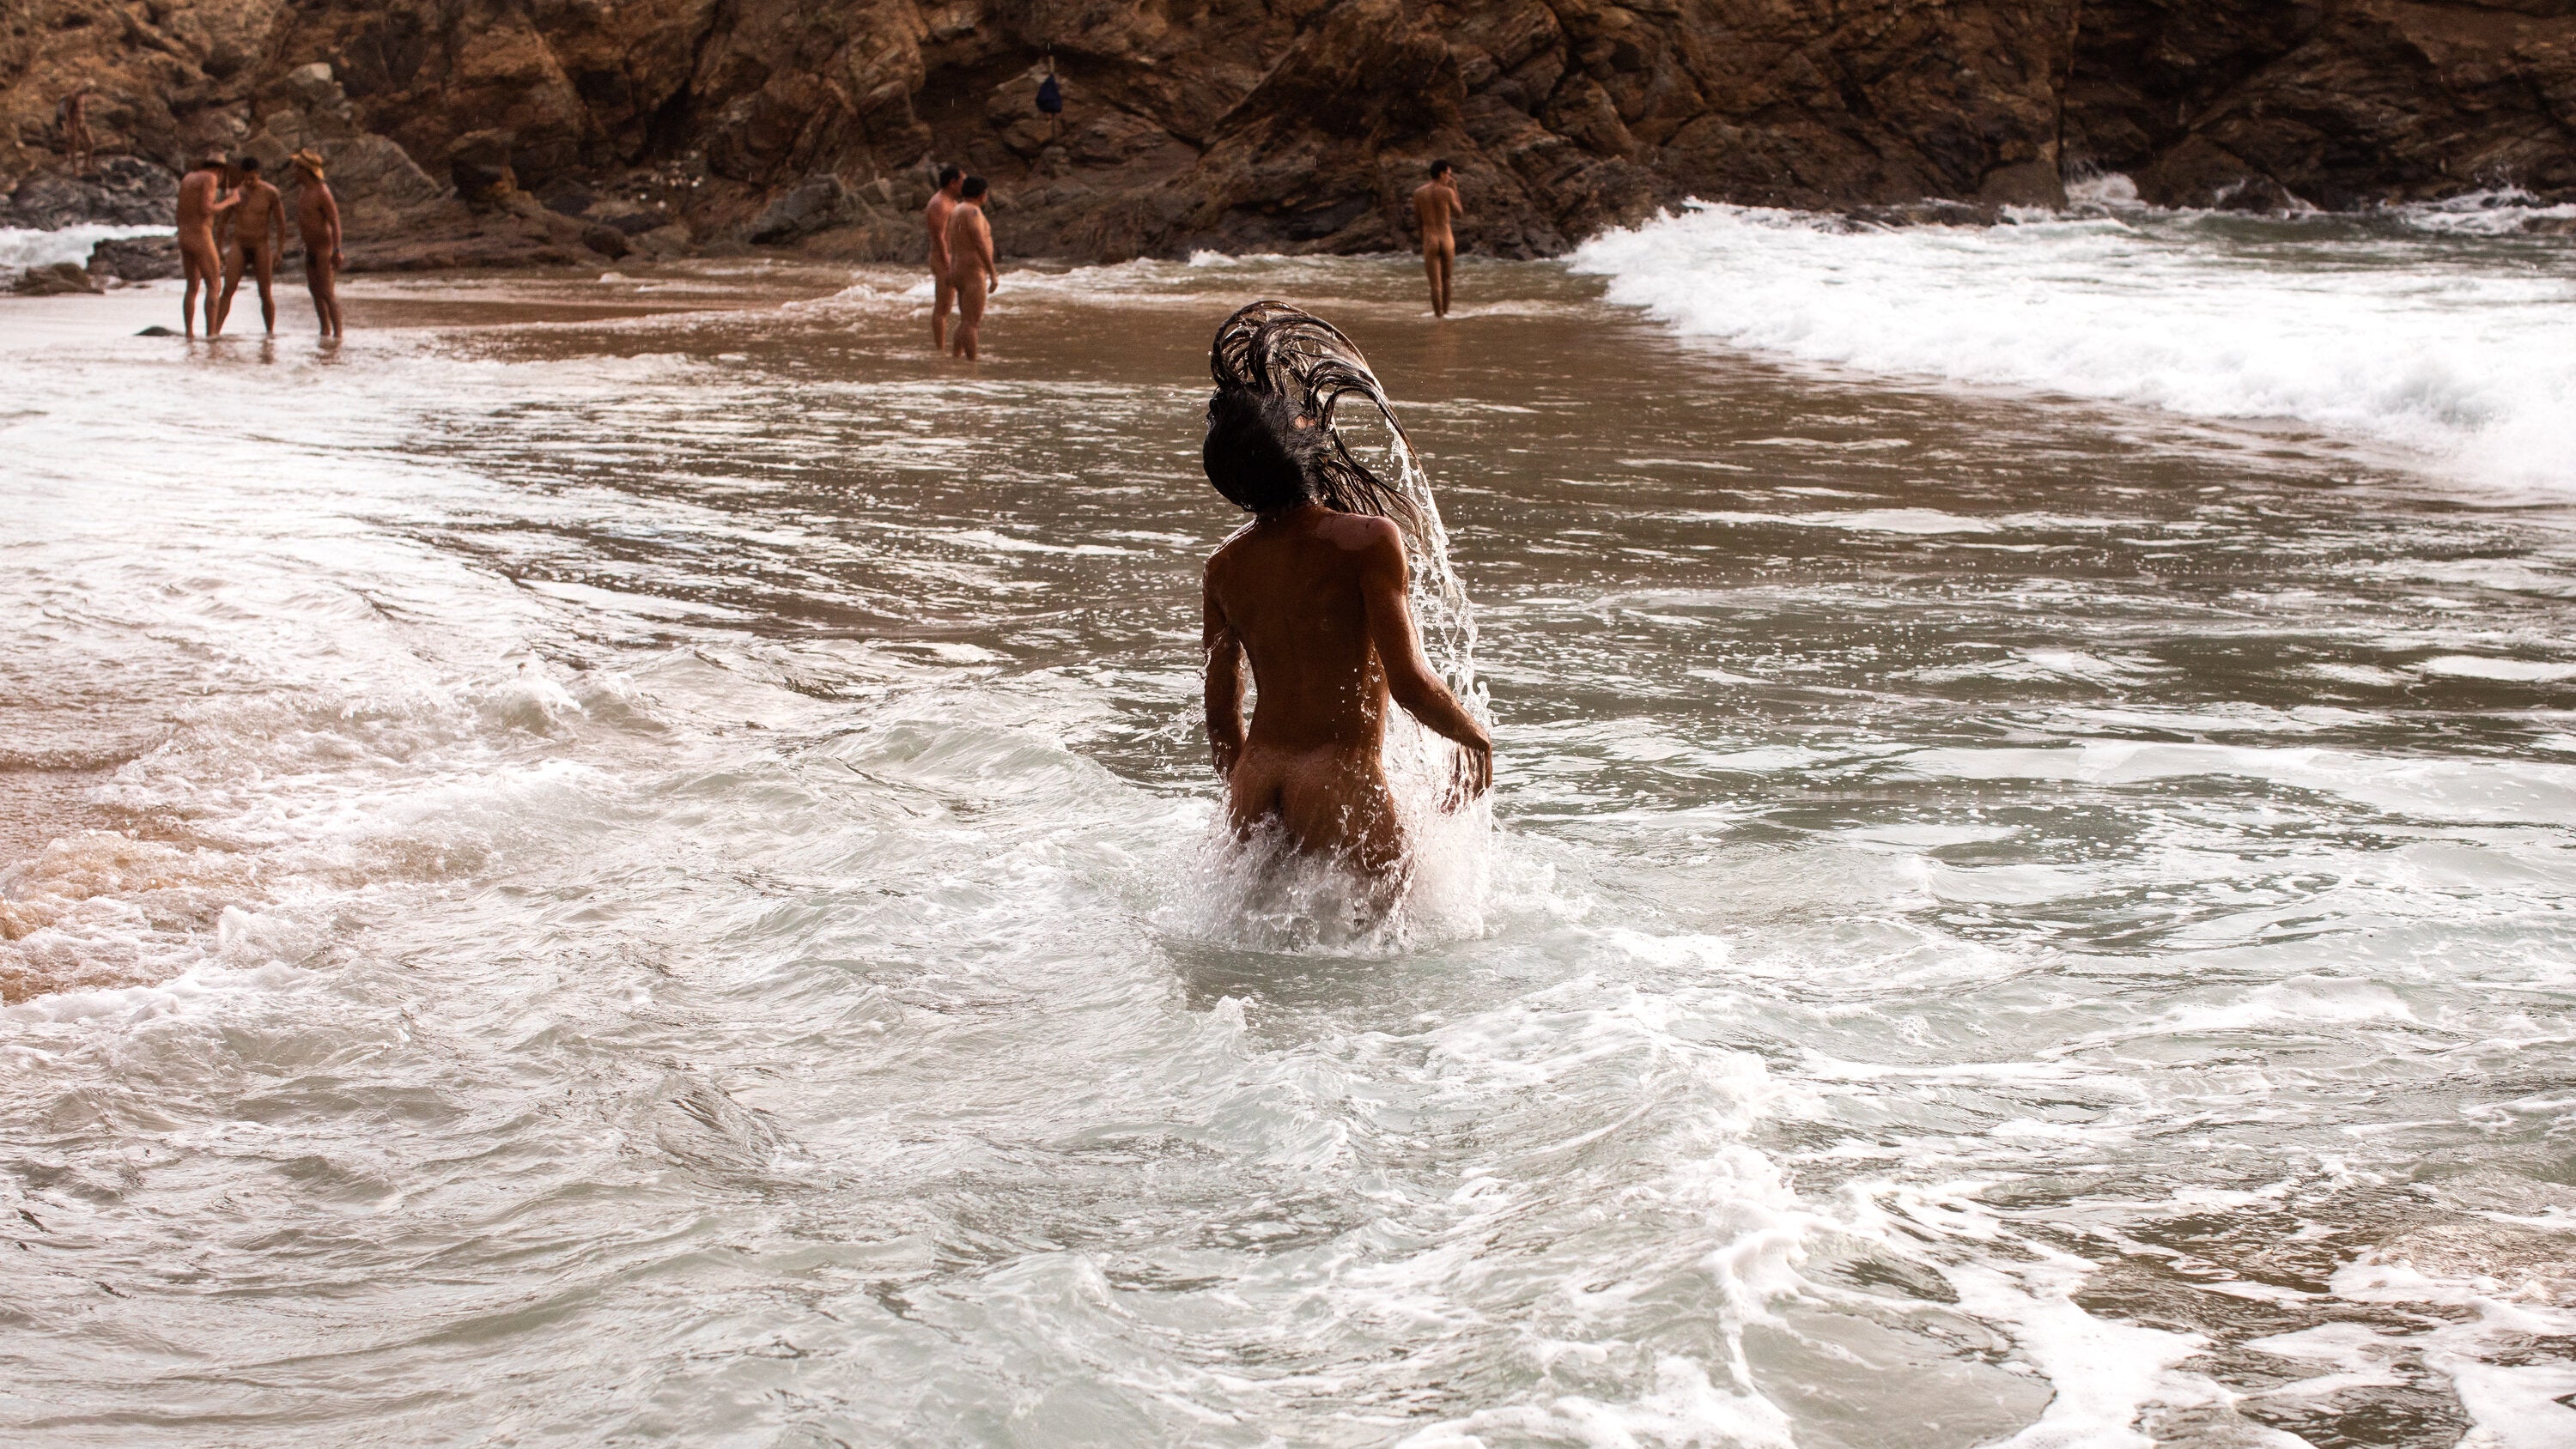 darlene ferrara recommends Www Nude Beach Com